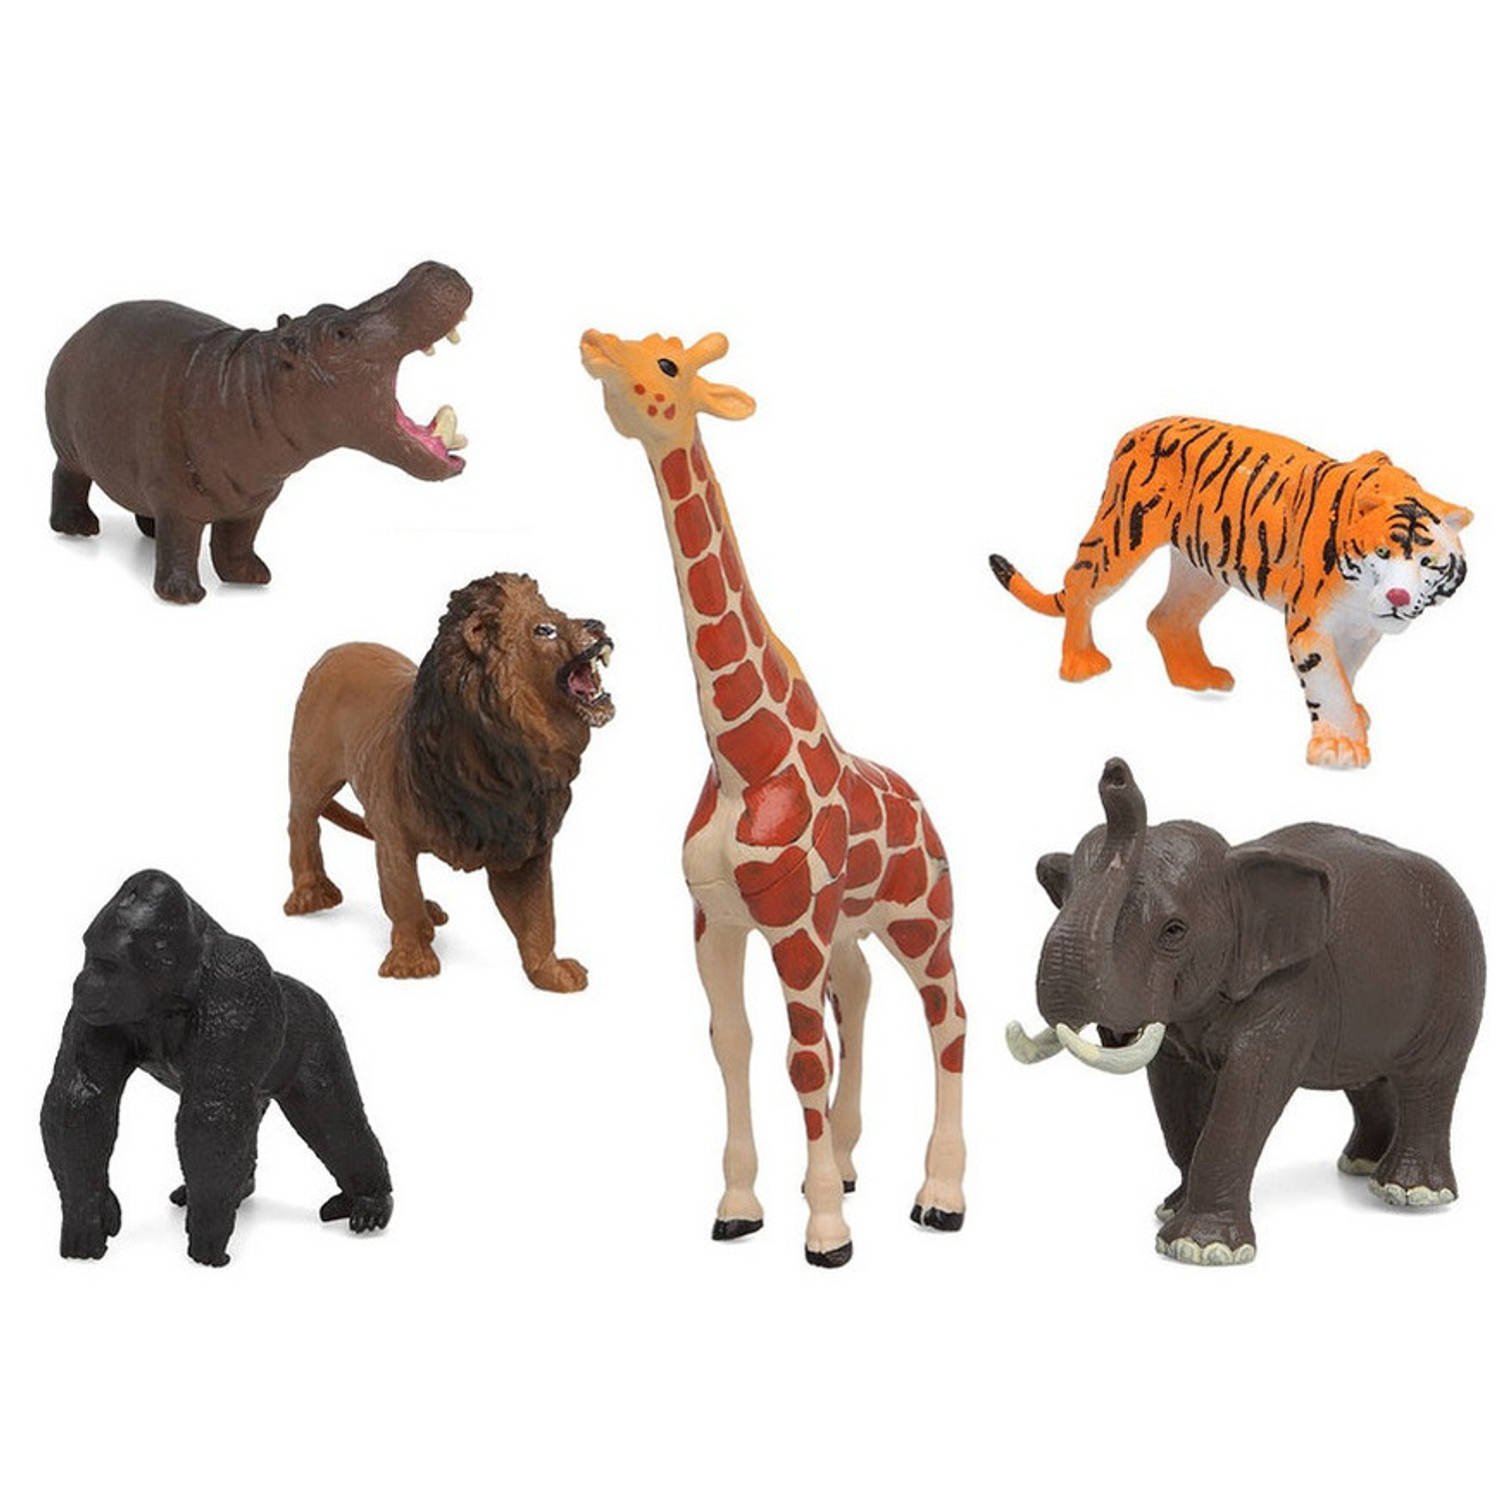 hospita waardigheid Alstublieft Speelgoed safari jungle dieren figuren 5x stuks variabele afmetingen 17 x 8  cm tot 6 x 7 cm - Speelfigurenset | Blokker